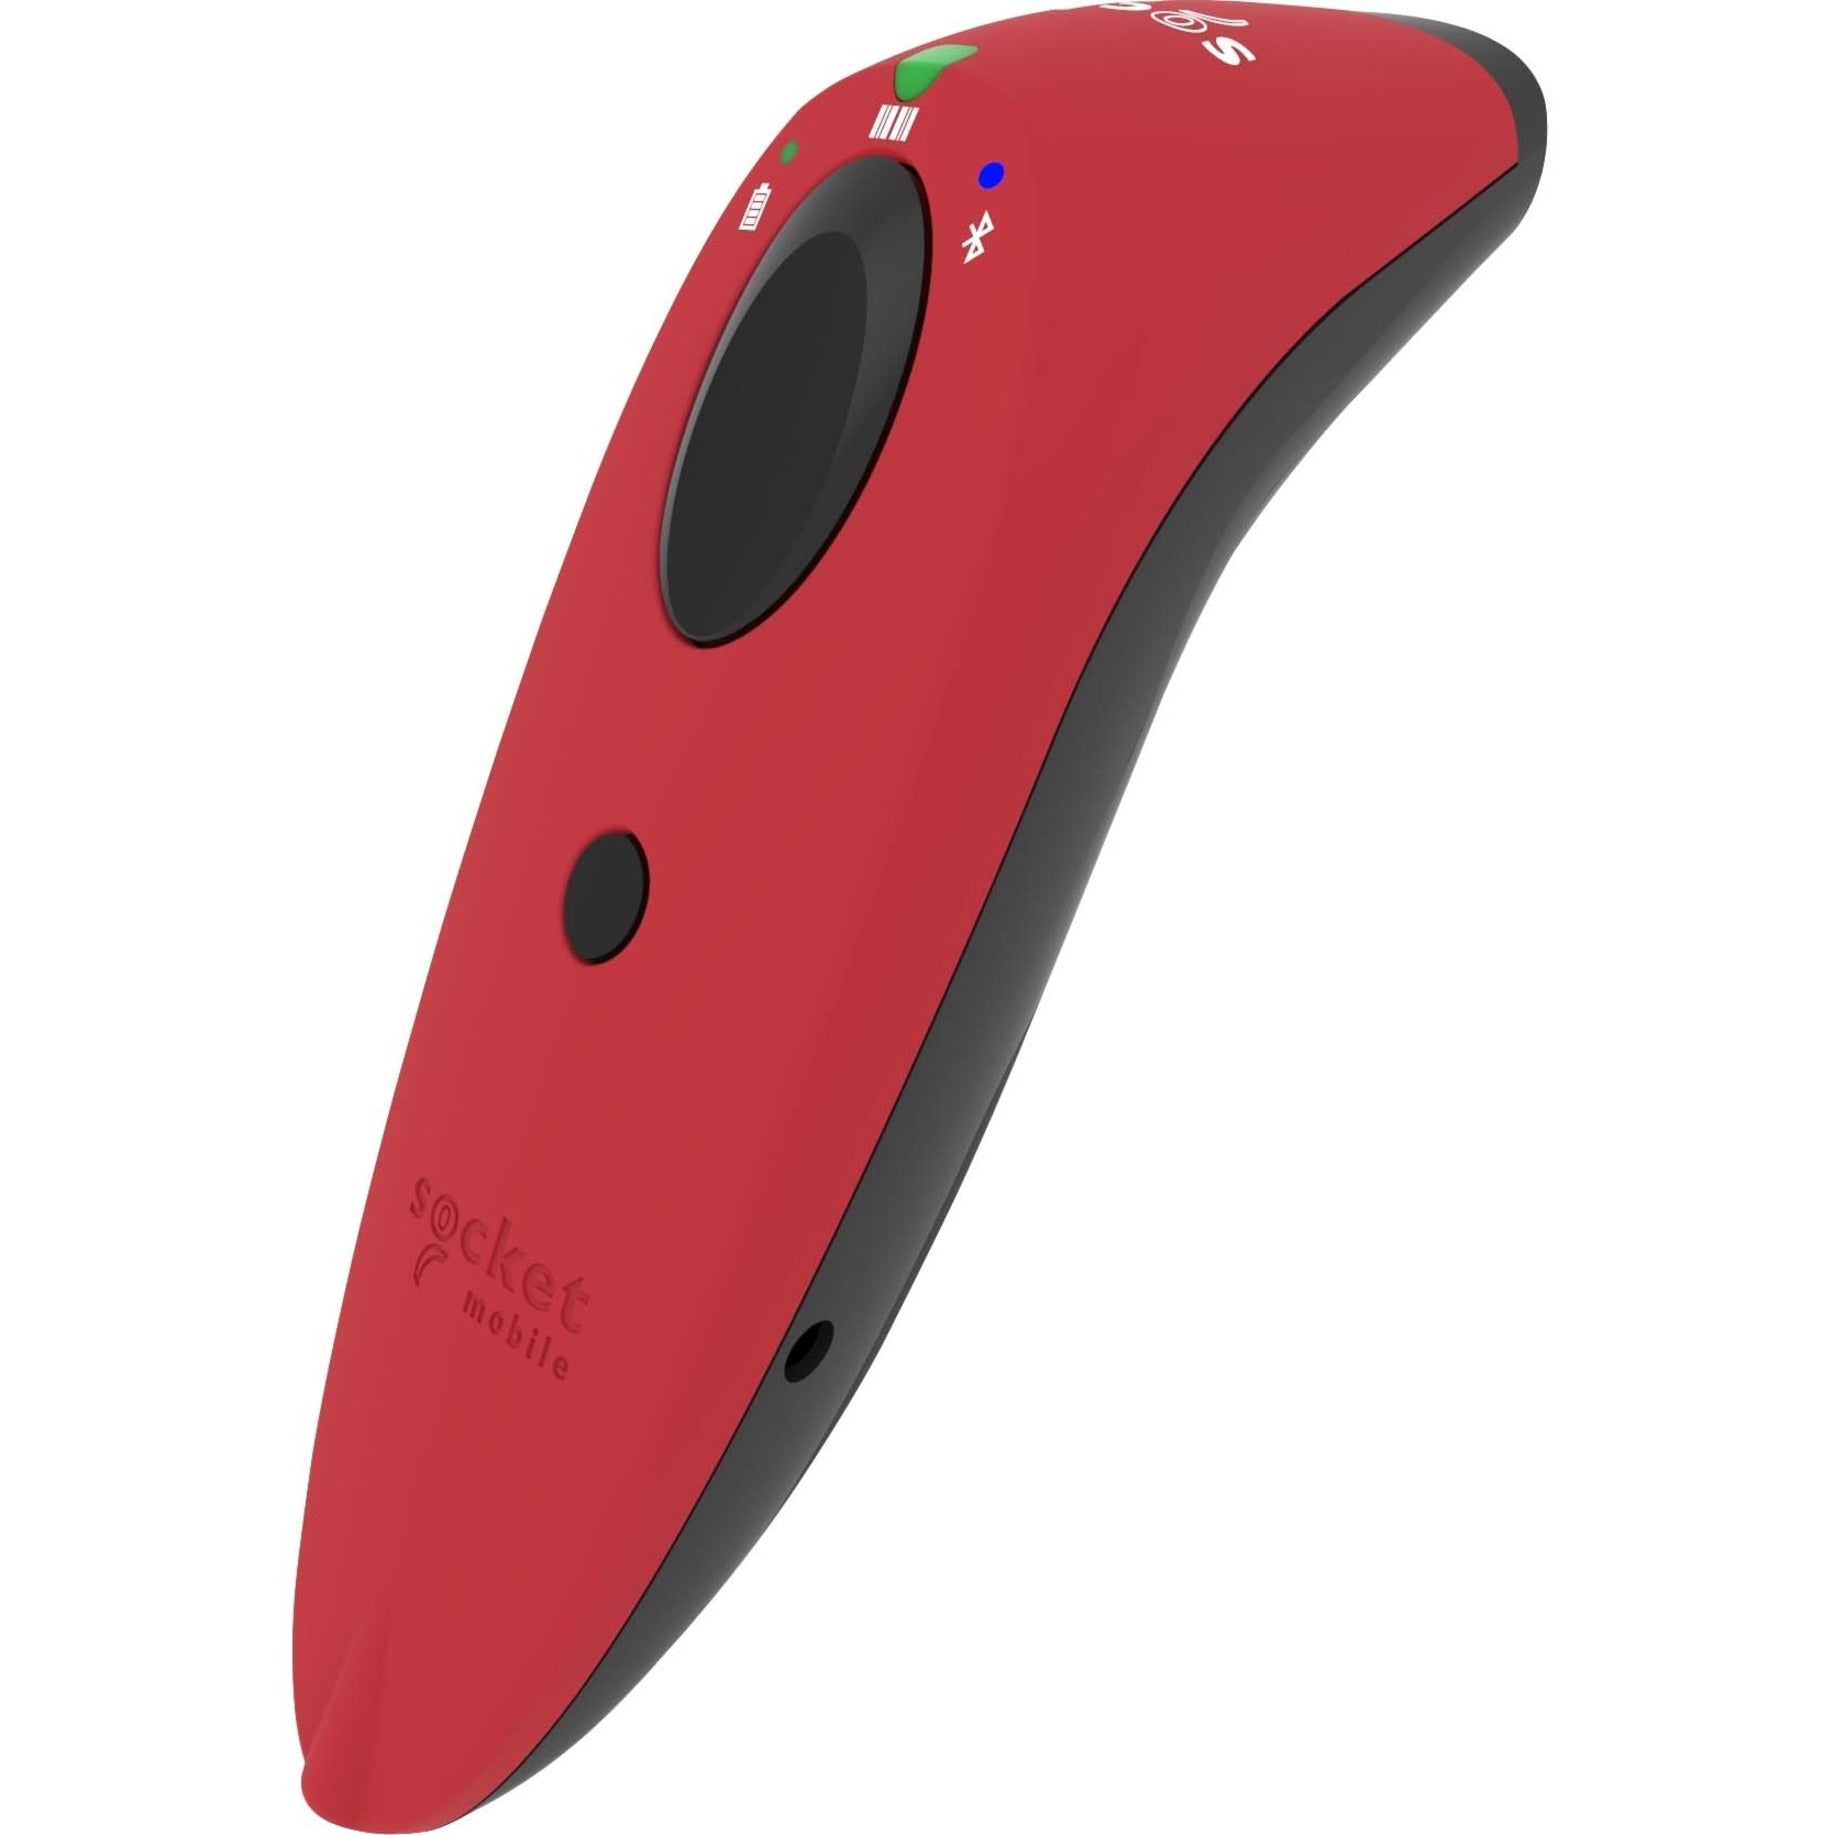 Socket Mobile CX3400-1858 SocketScan S730 Laser Barcode Scanner, Red